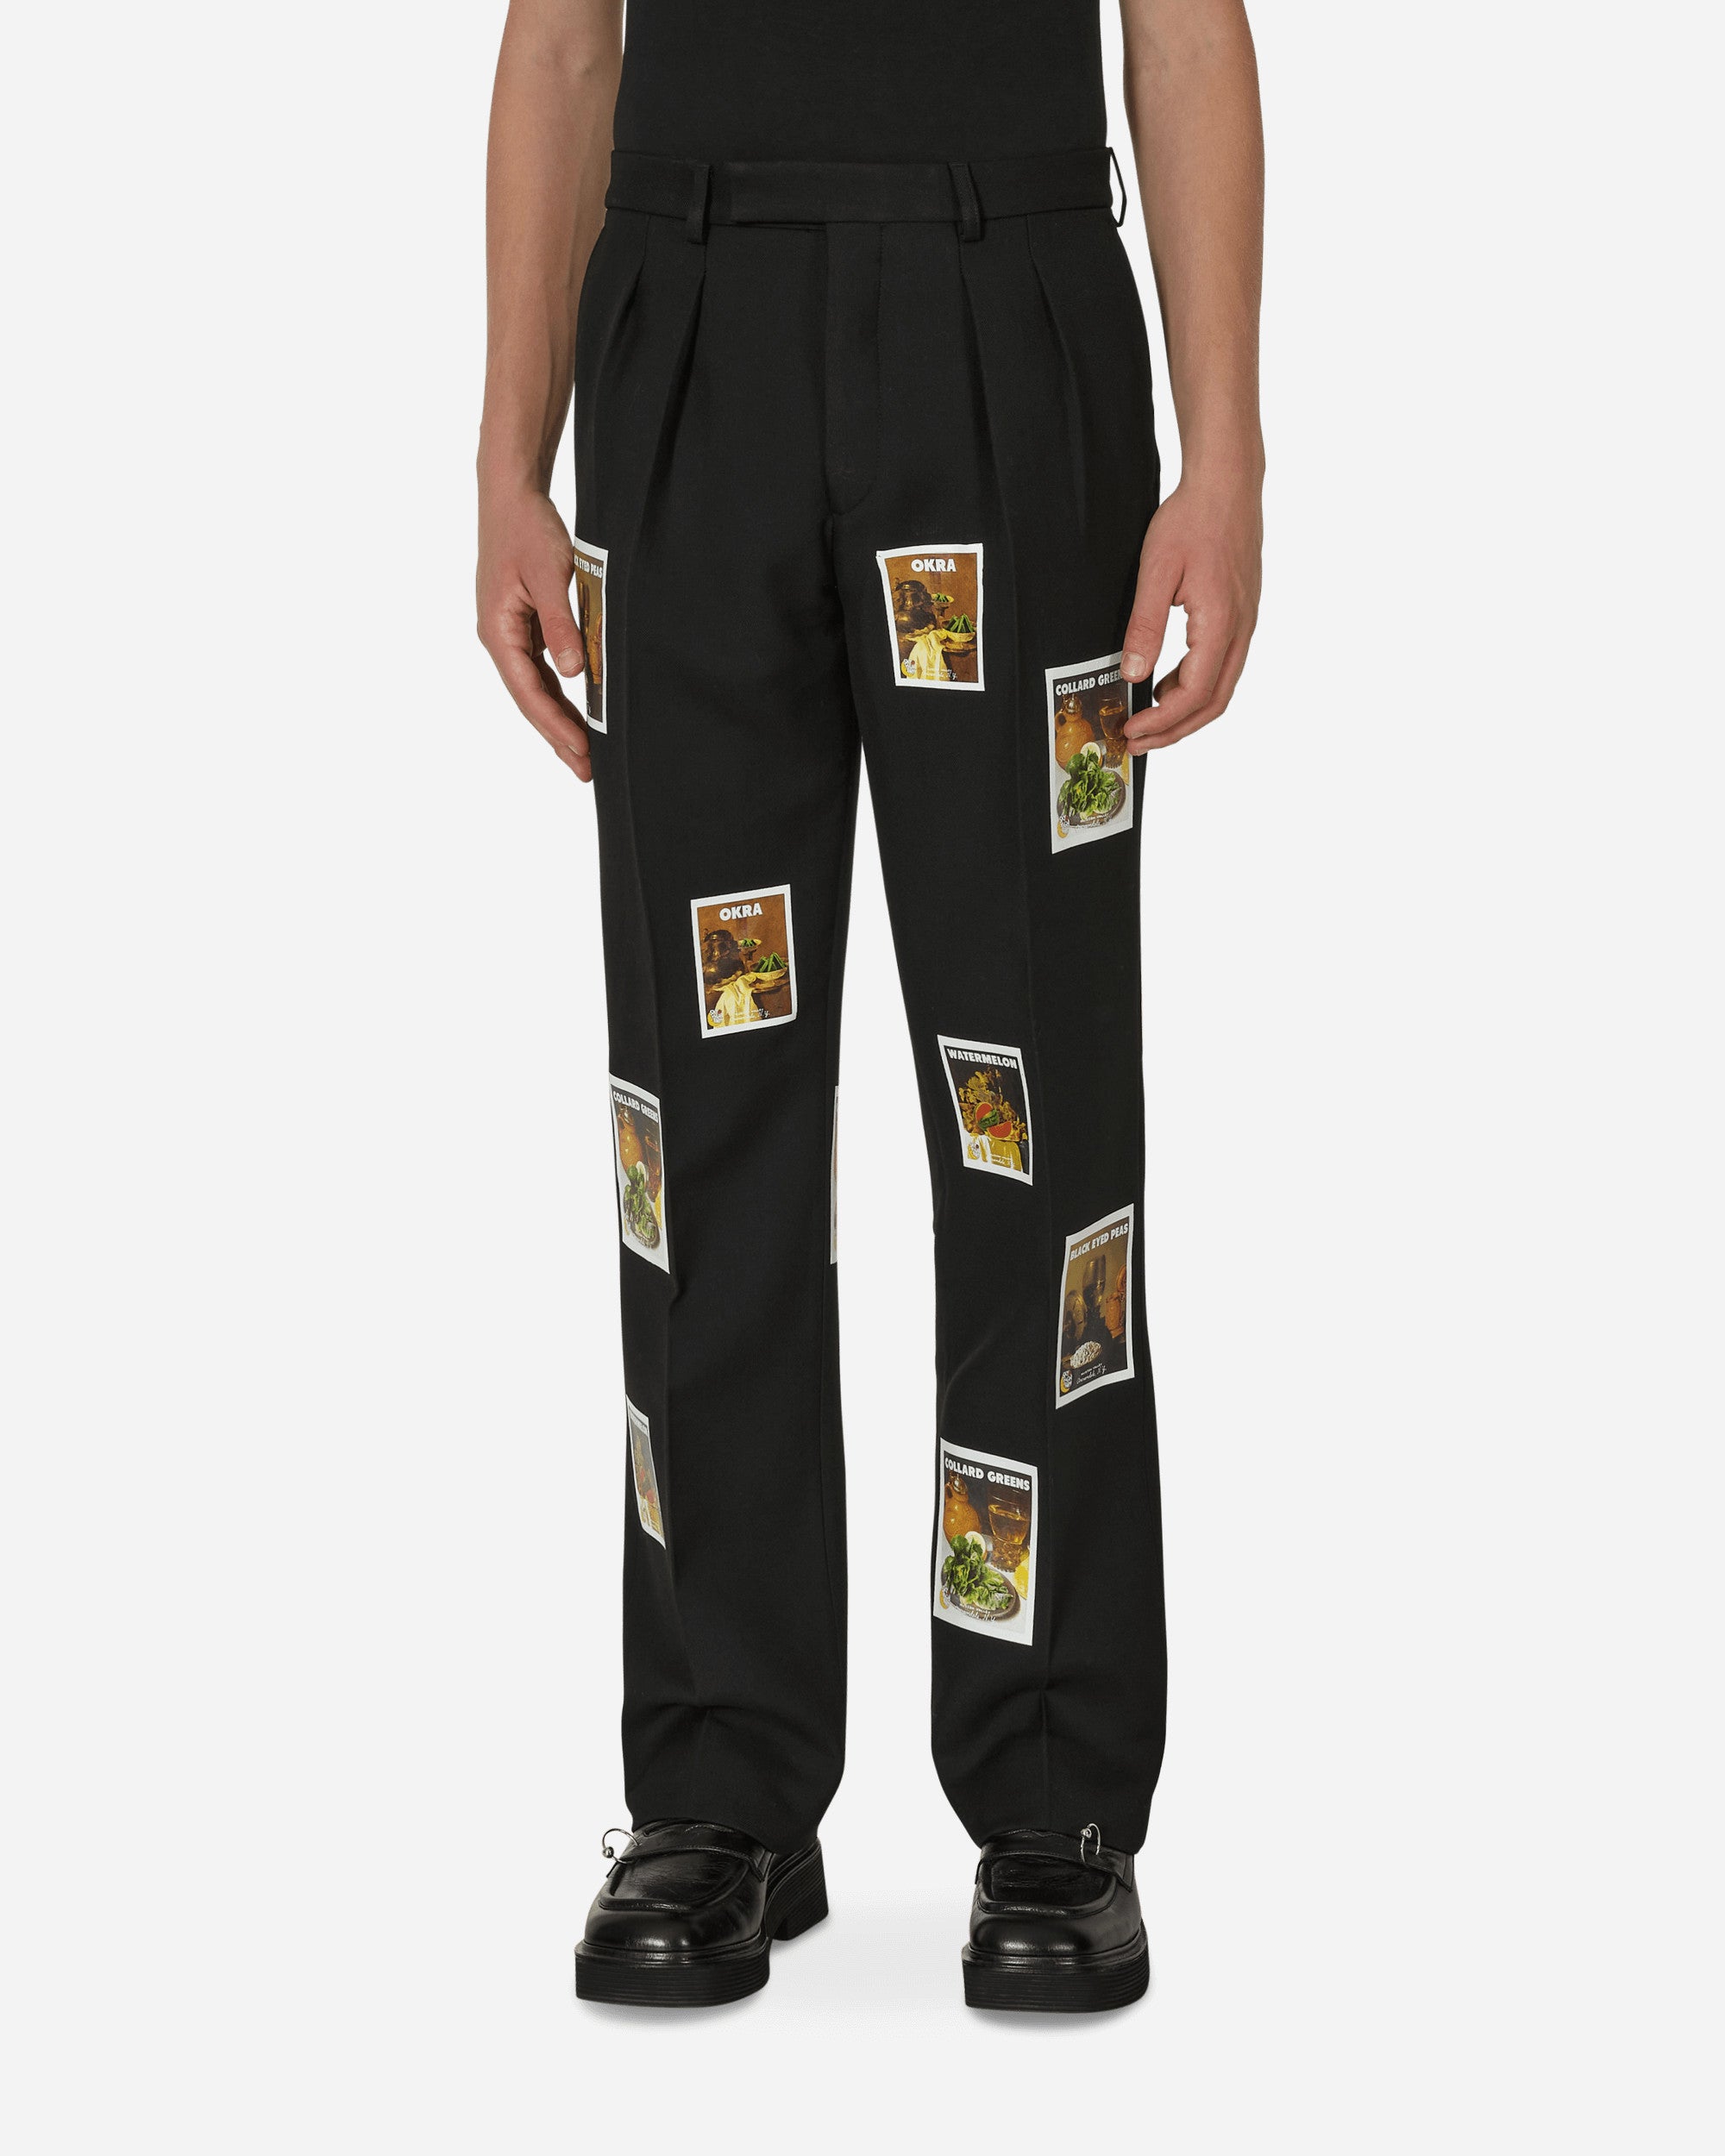 Sky High Farm Denim Tears Patch Suit Pants Black Pants Trousers SHF02P102 2